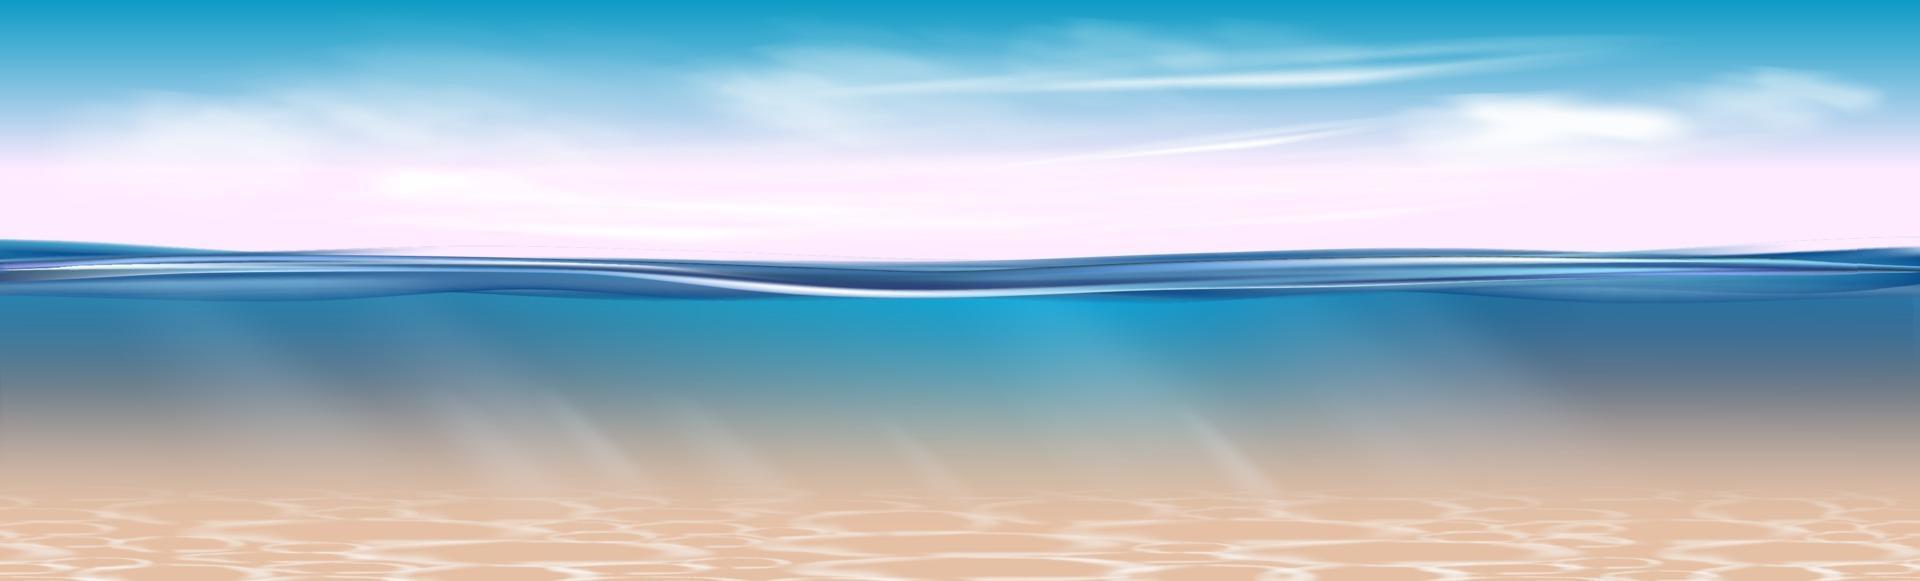 realistisches blaues Unterwasser. 3D-Illustration. vektor